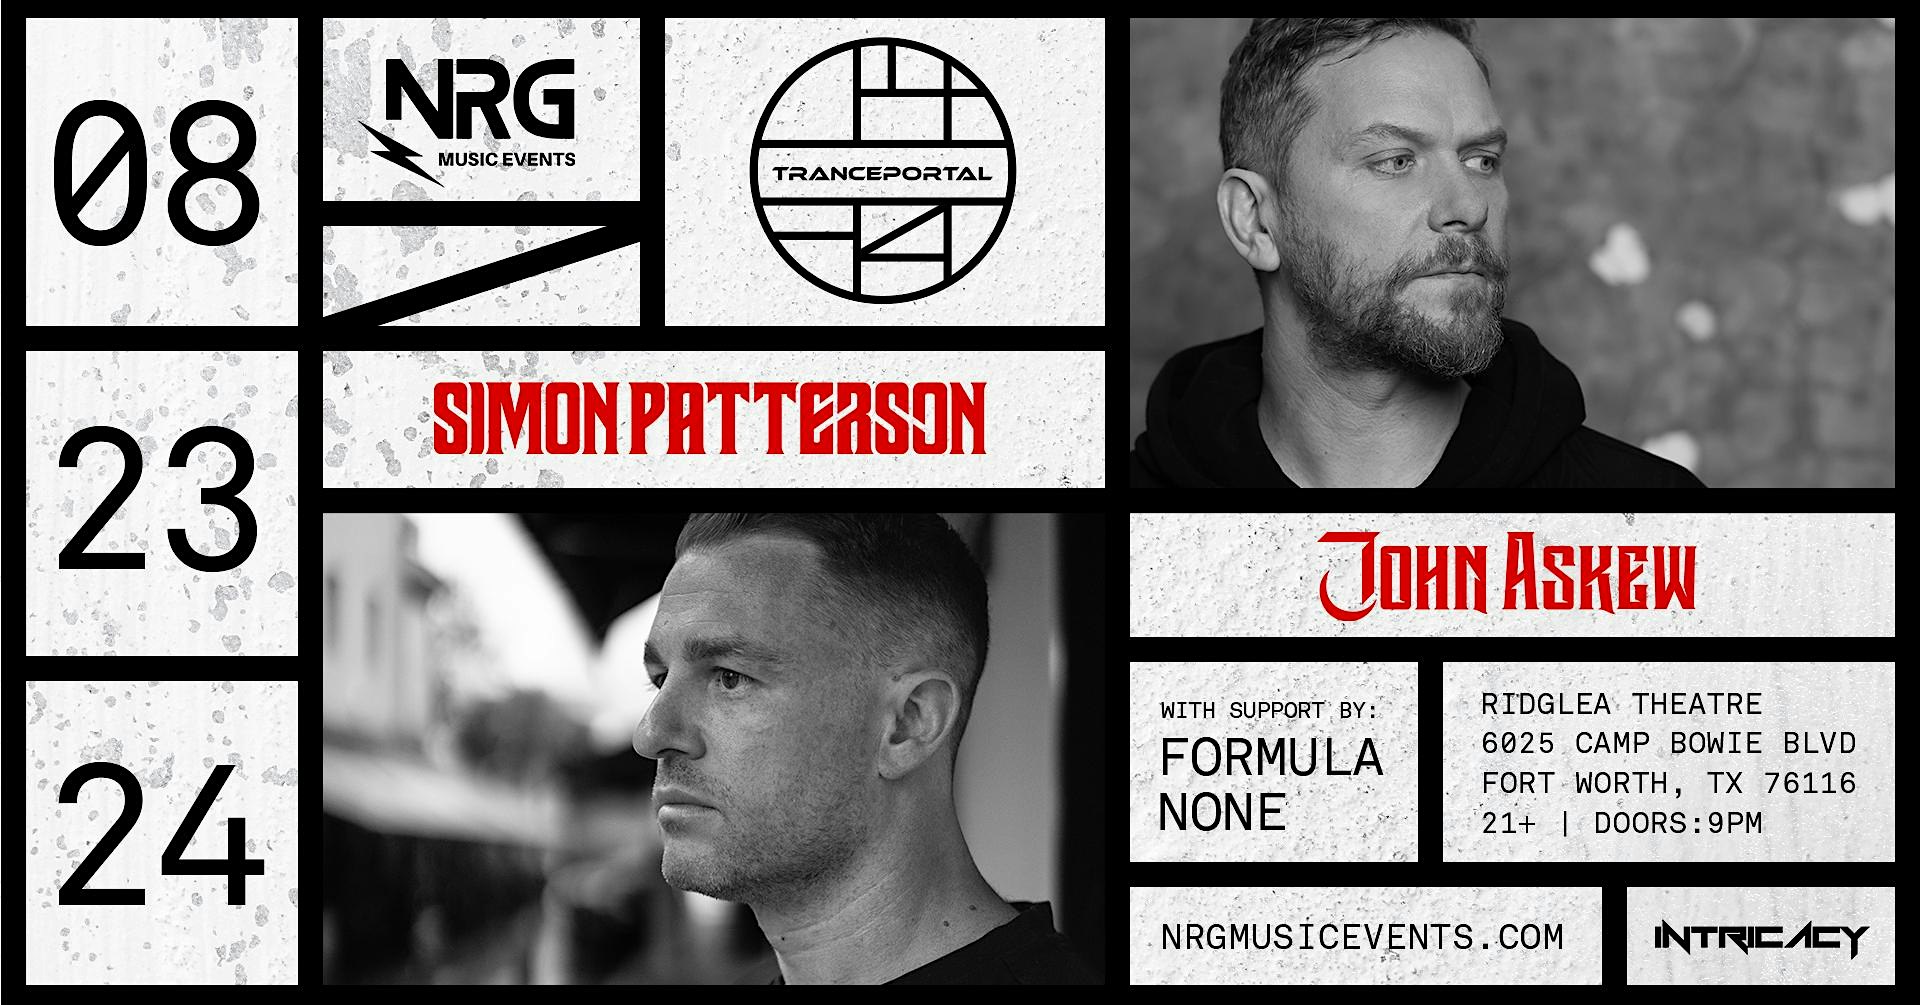 Tranceportal Presents: Simon Patterson, John Askew, & Formula None